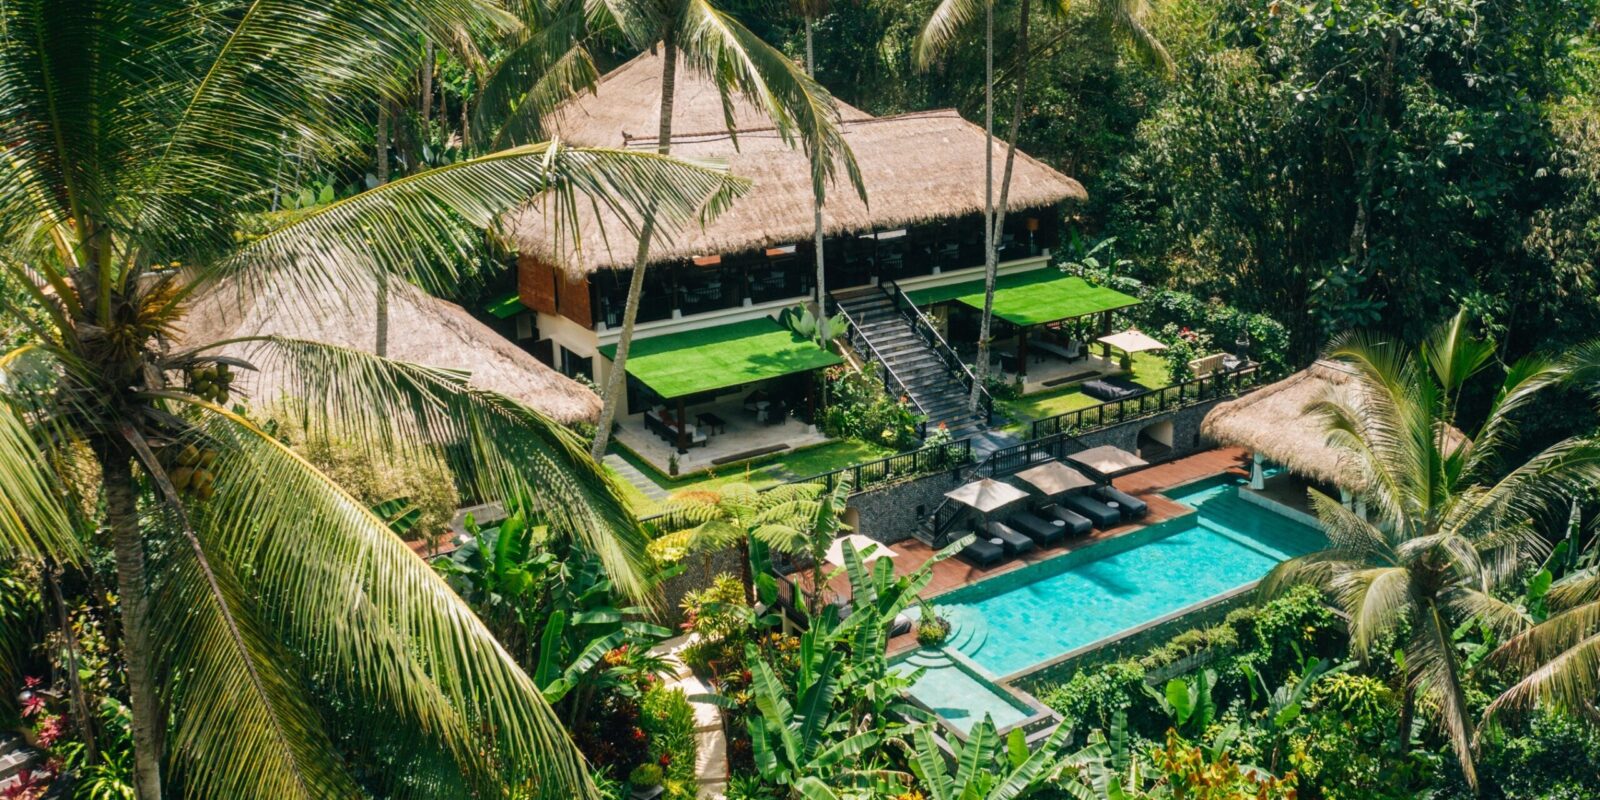 Hanging Gardens of Bali – 43